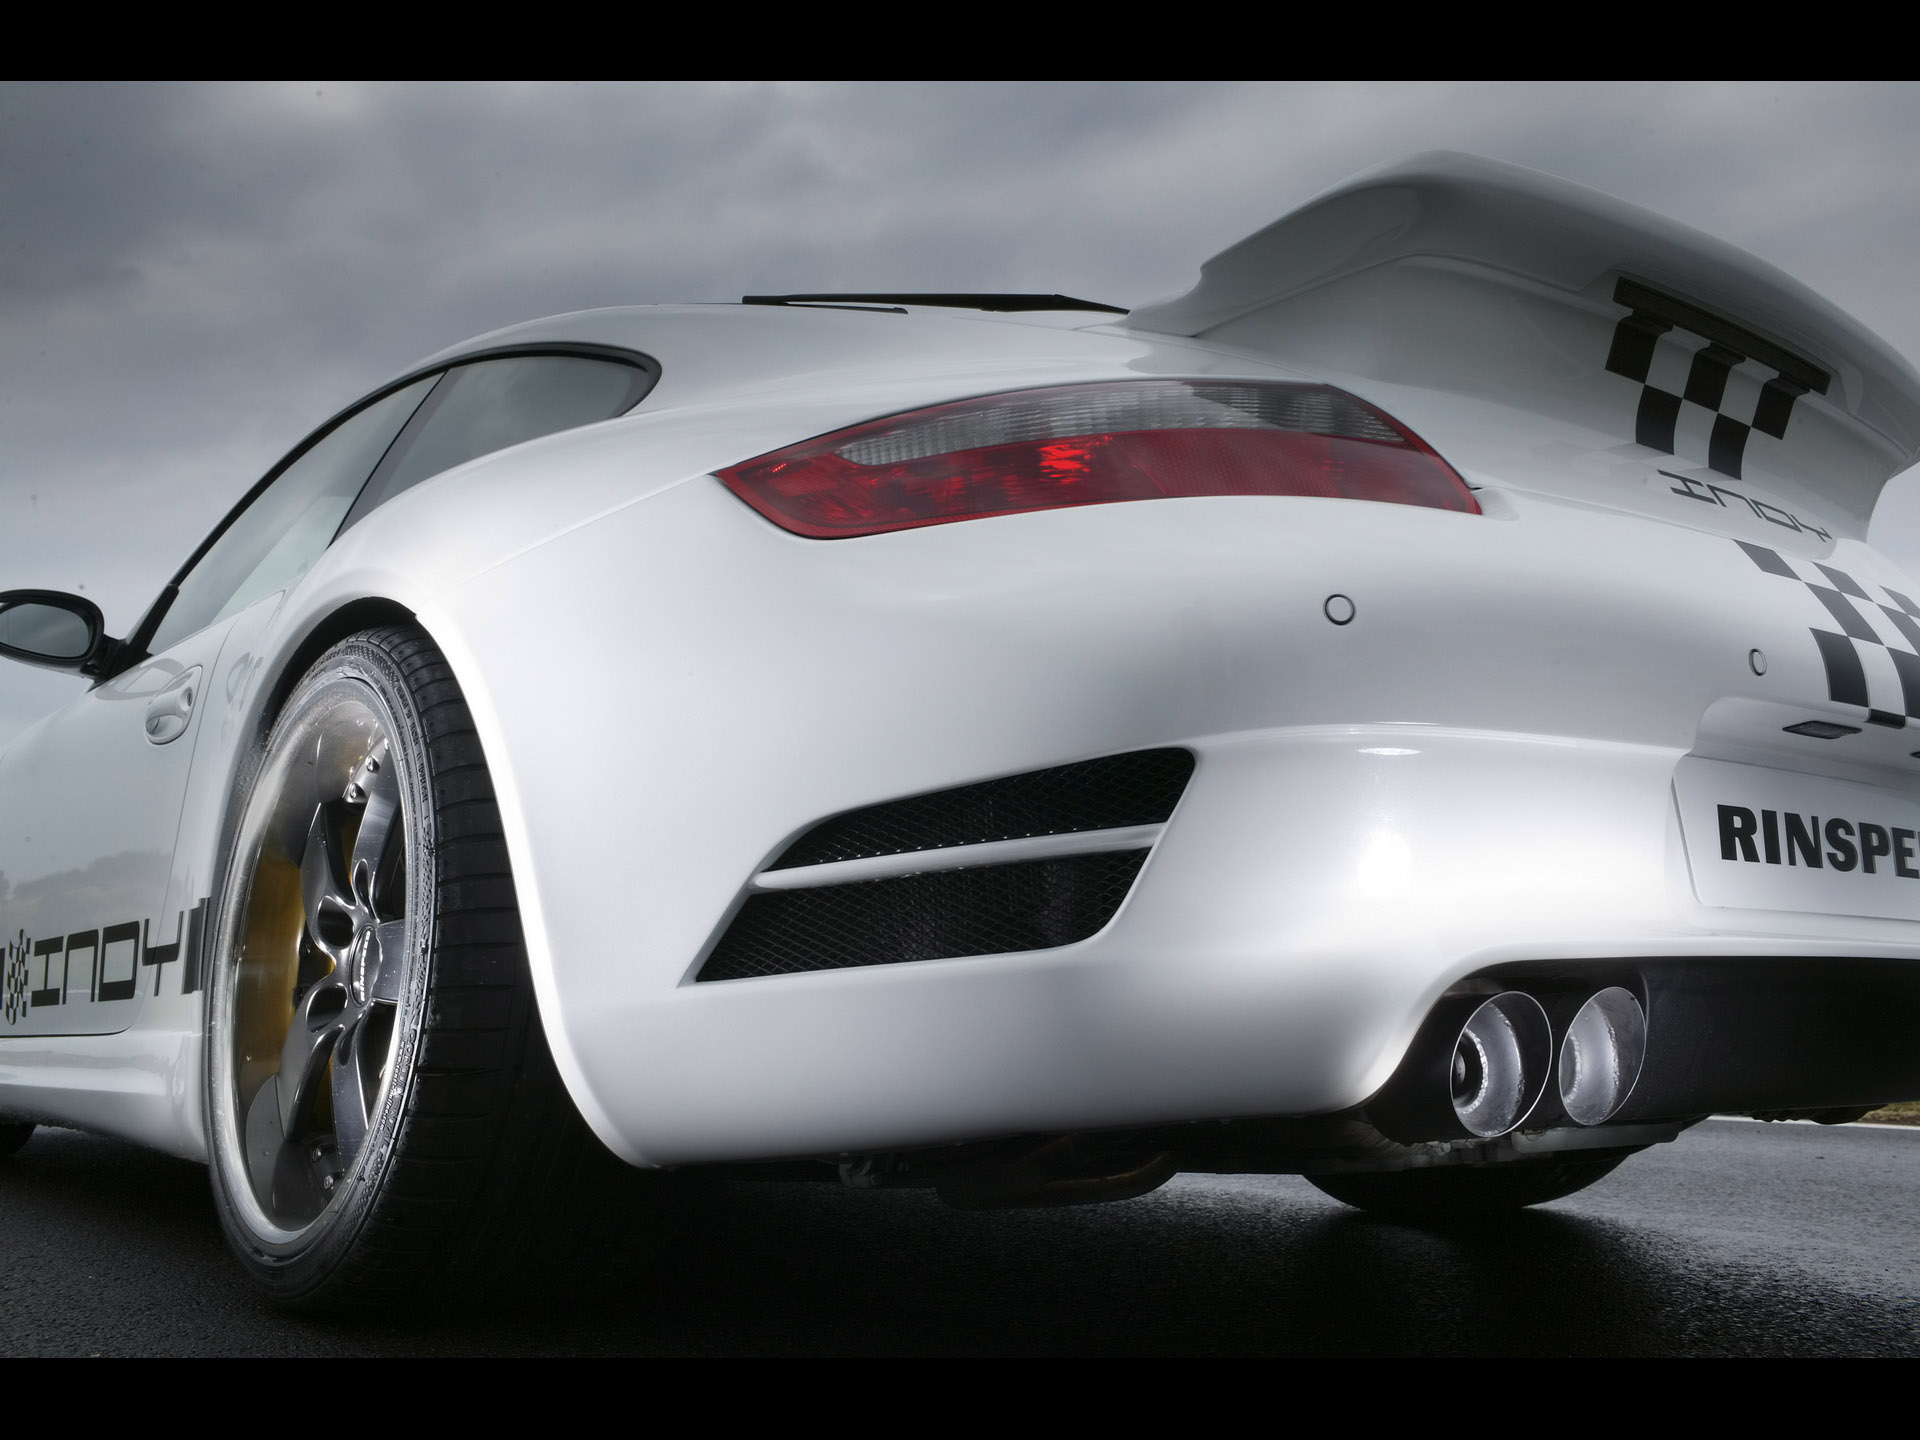 Инди машины. Rinspeed Porsche 997. Porsche 911 Rinspeed. Rinspeed Porsche 997 Indy. Белый автомобиль.